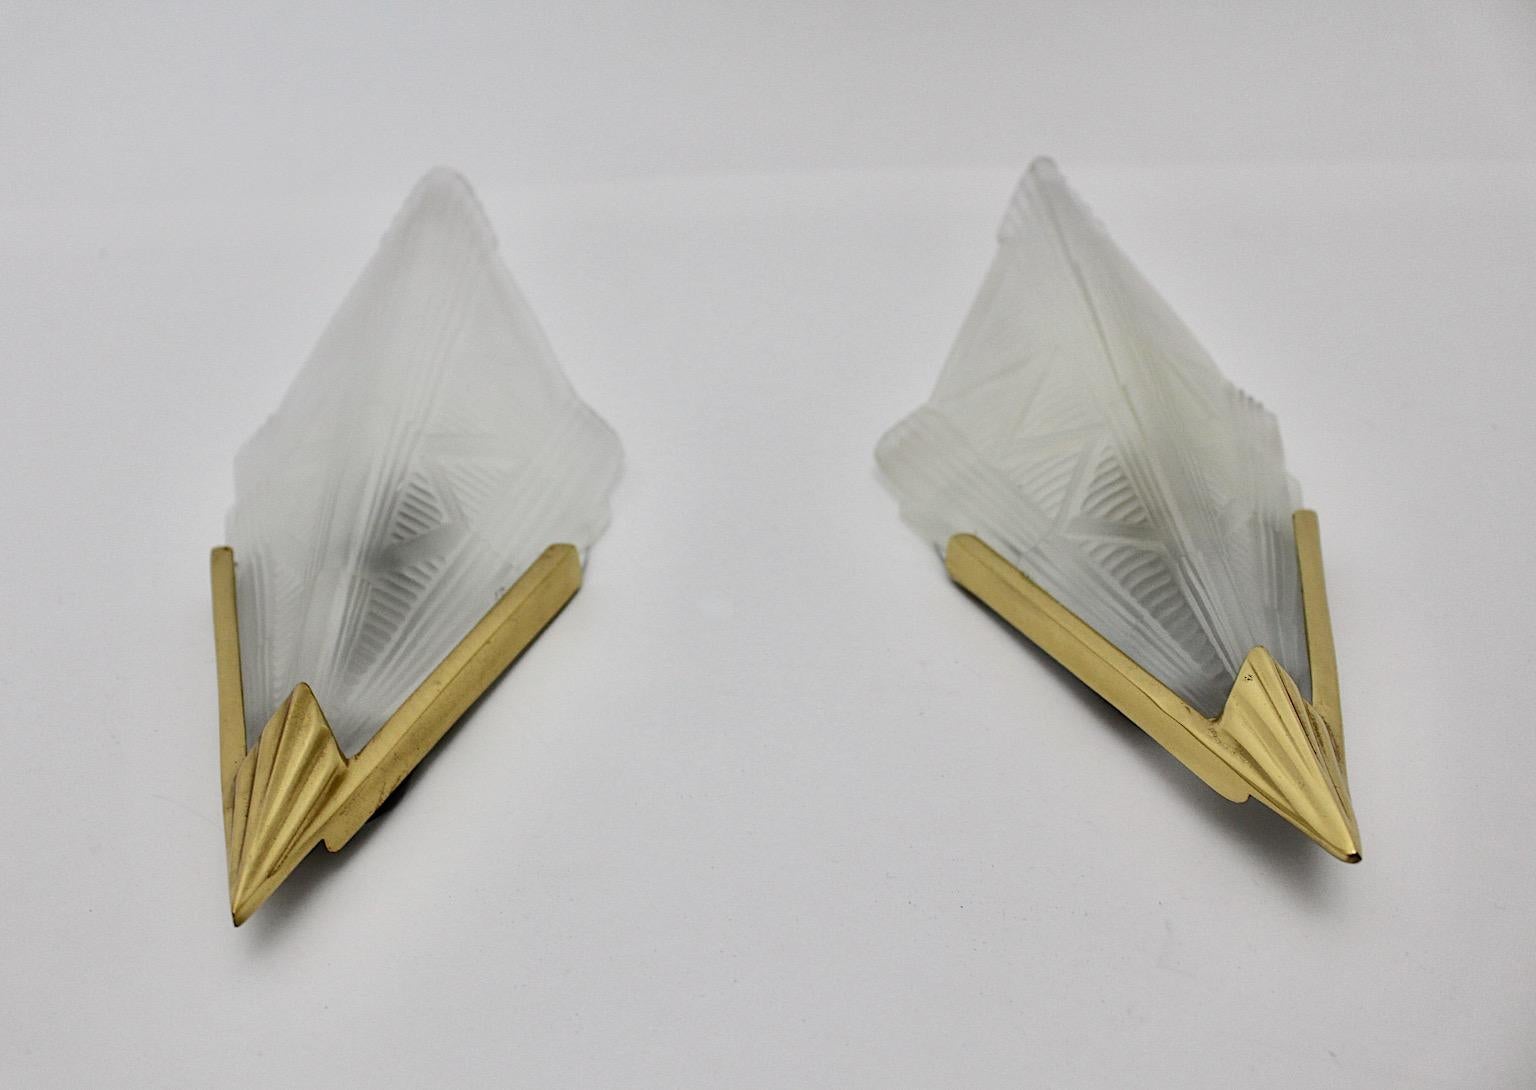 Art Deco-Stil Paar Wandleuchten oder Wandleuchter in Dreiecksform aus Milchglas, Messing, Metall und Kunststoff Degue-Stil, 1990er Jahre, Schweden.
Ein wunderschönes Paar Wandleuchten mit Schirmen aus mattiertem, gepresstem Milchglas mit